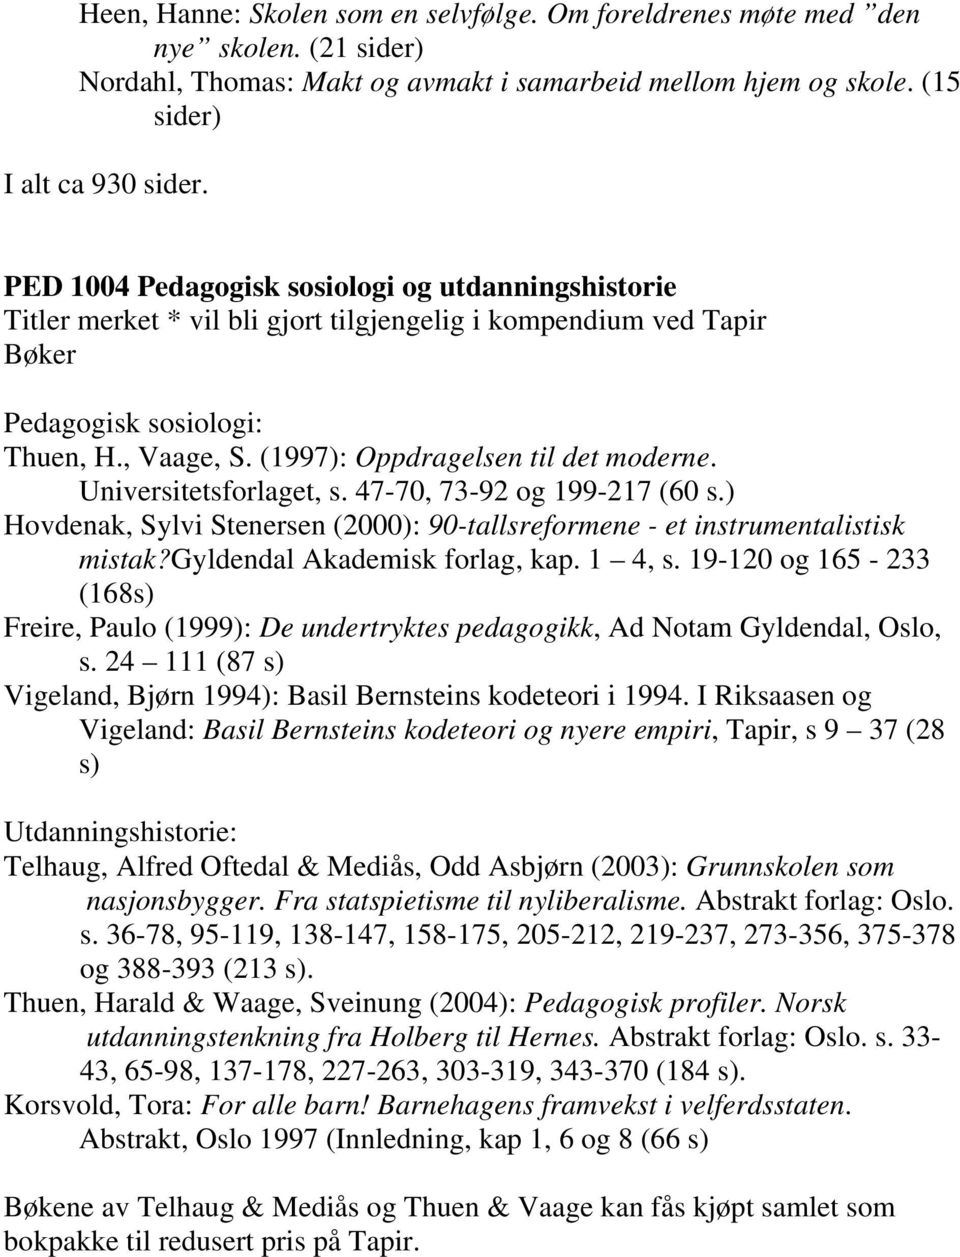 (1997): Oppdragelsen til det moderne. Universitetsforlaget, s. 47-70, 73-92 og 199-217 (60 s.) Hovdenak, Sylvi Stenersen (2000): 90-tallsreformene - et instrumentalistisk mistak?